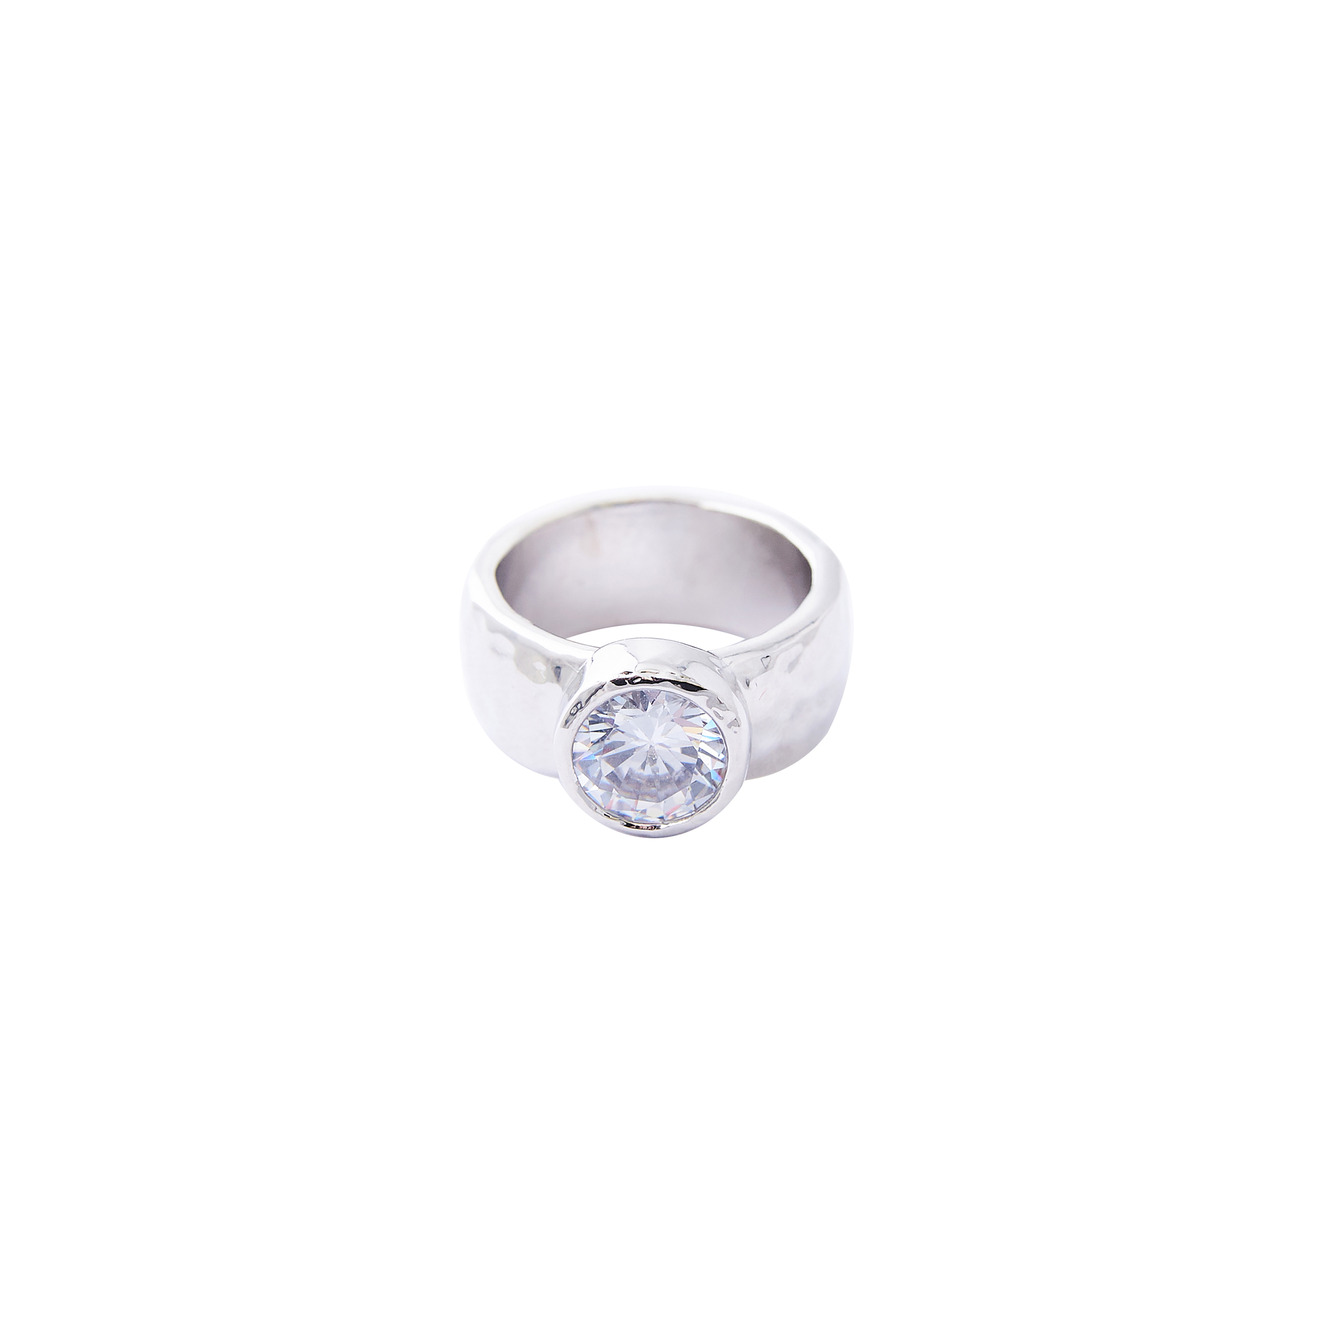 Herald Percy Серебристое высокое кольцо с крупным кристаллом